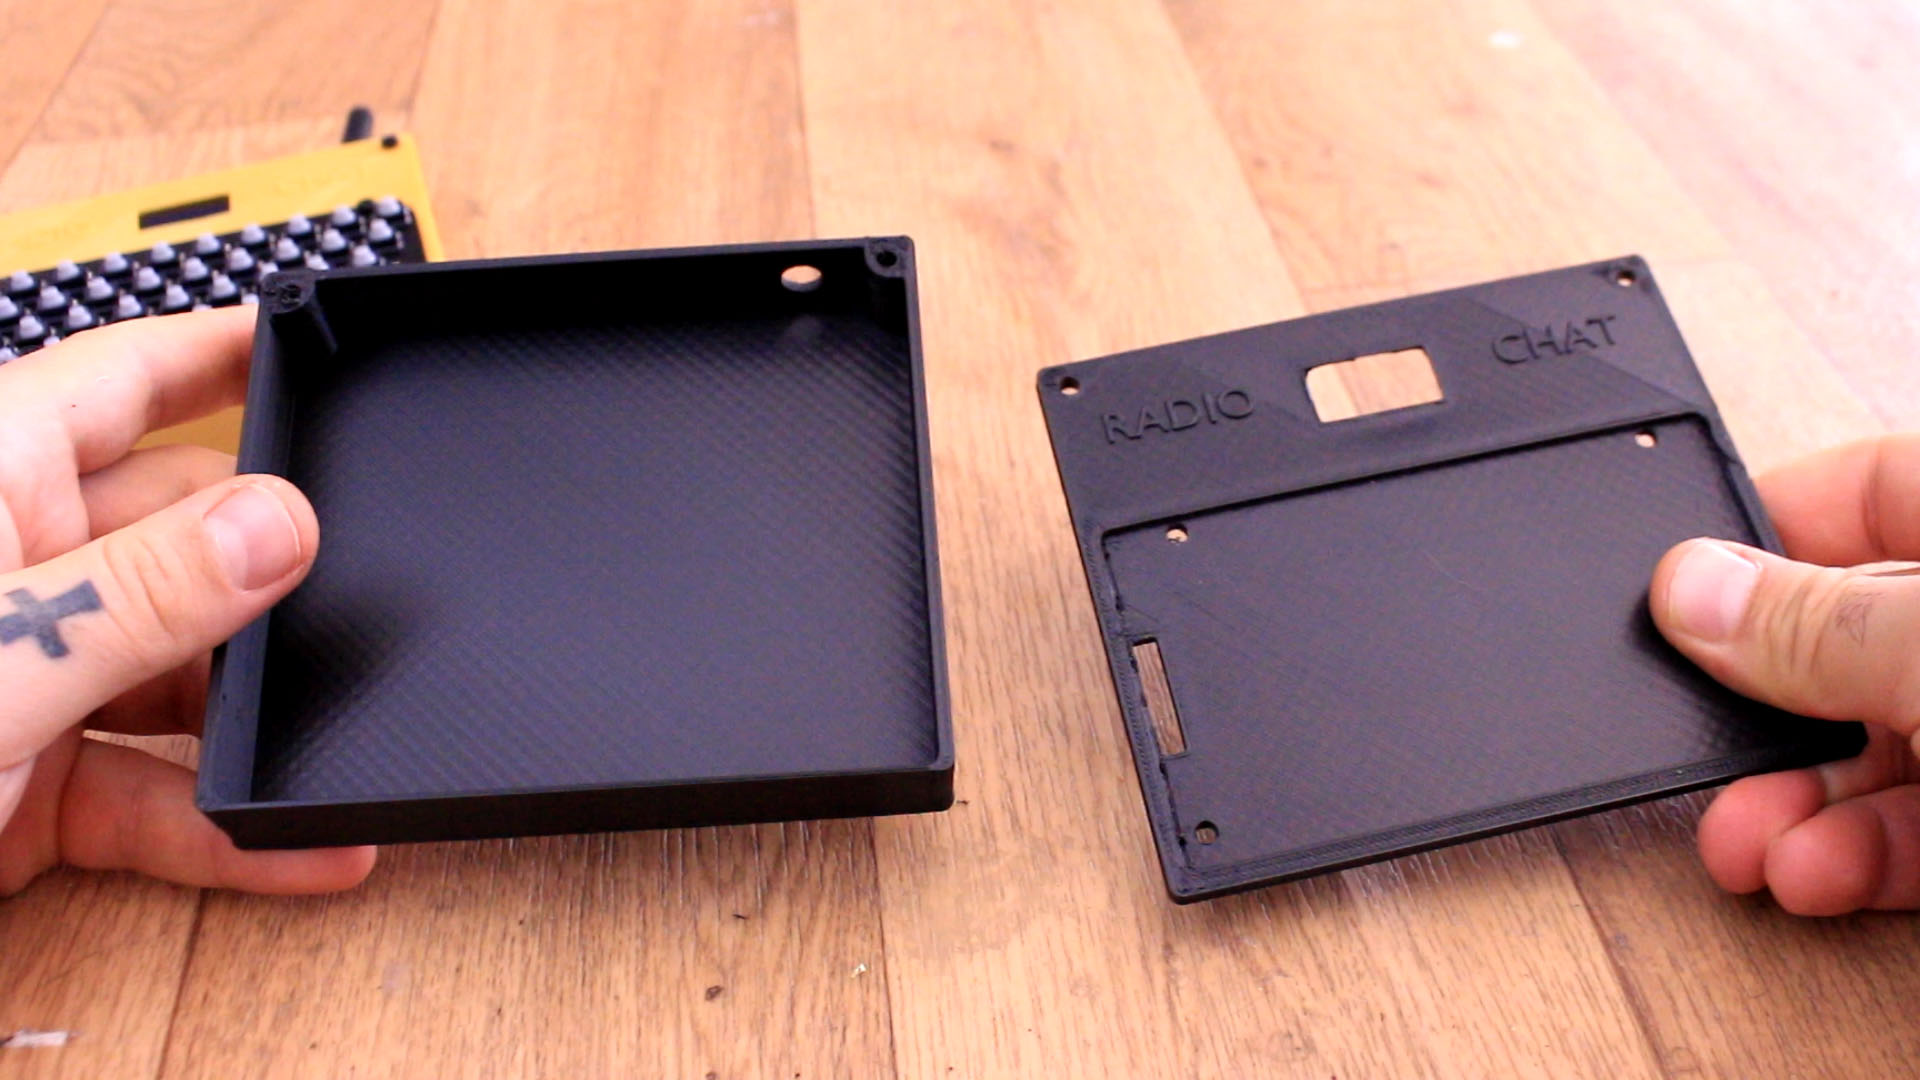 radio caht Arduino 3D printed case